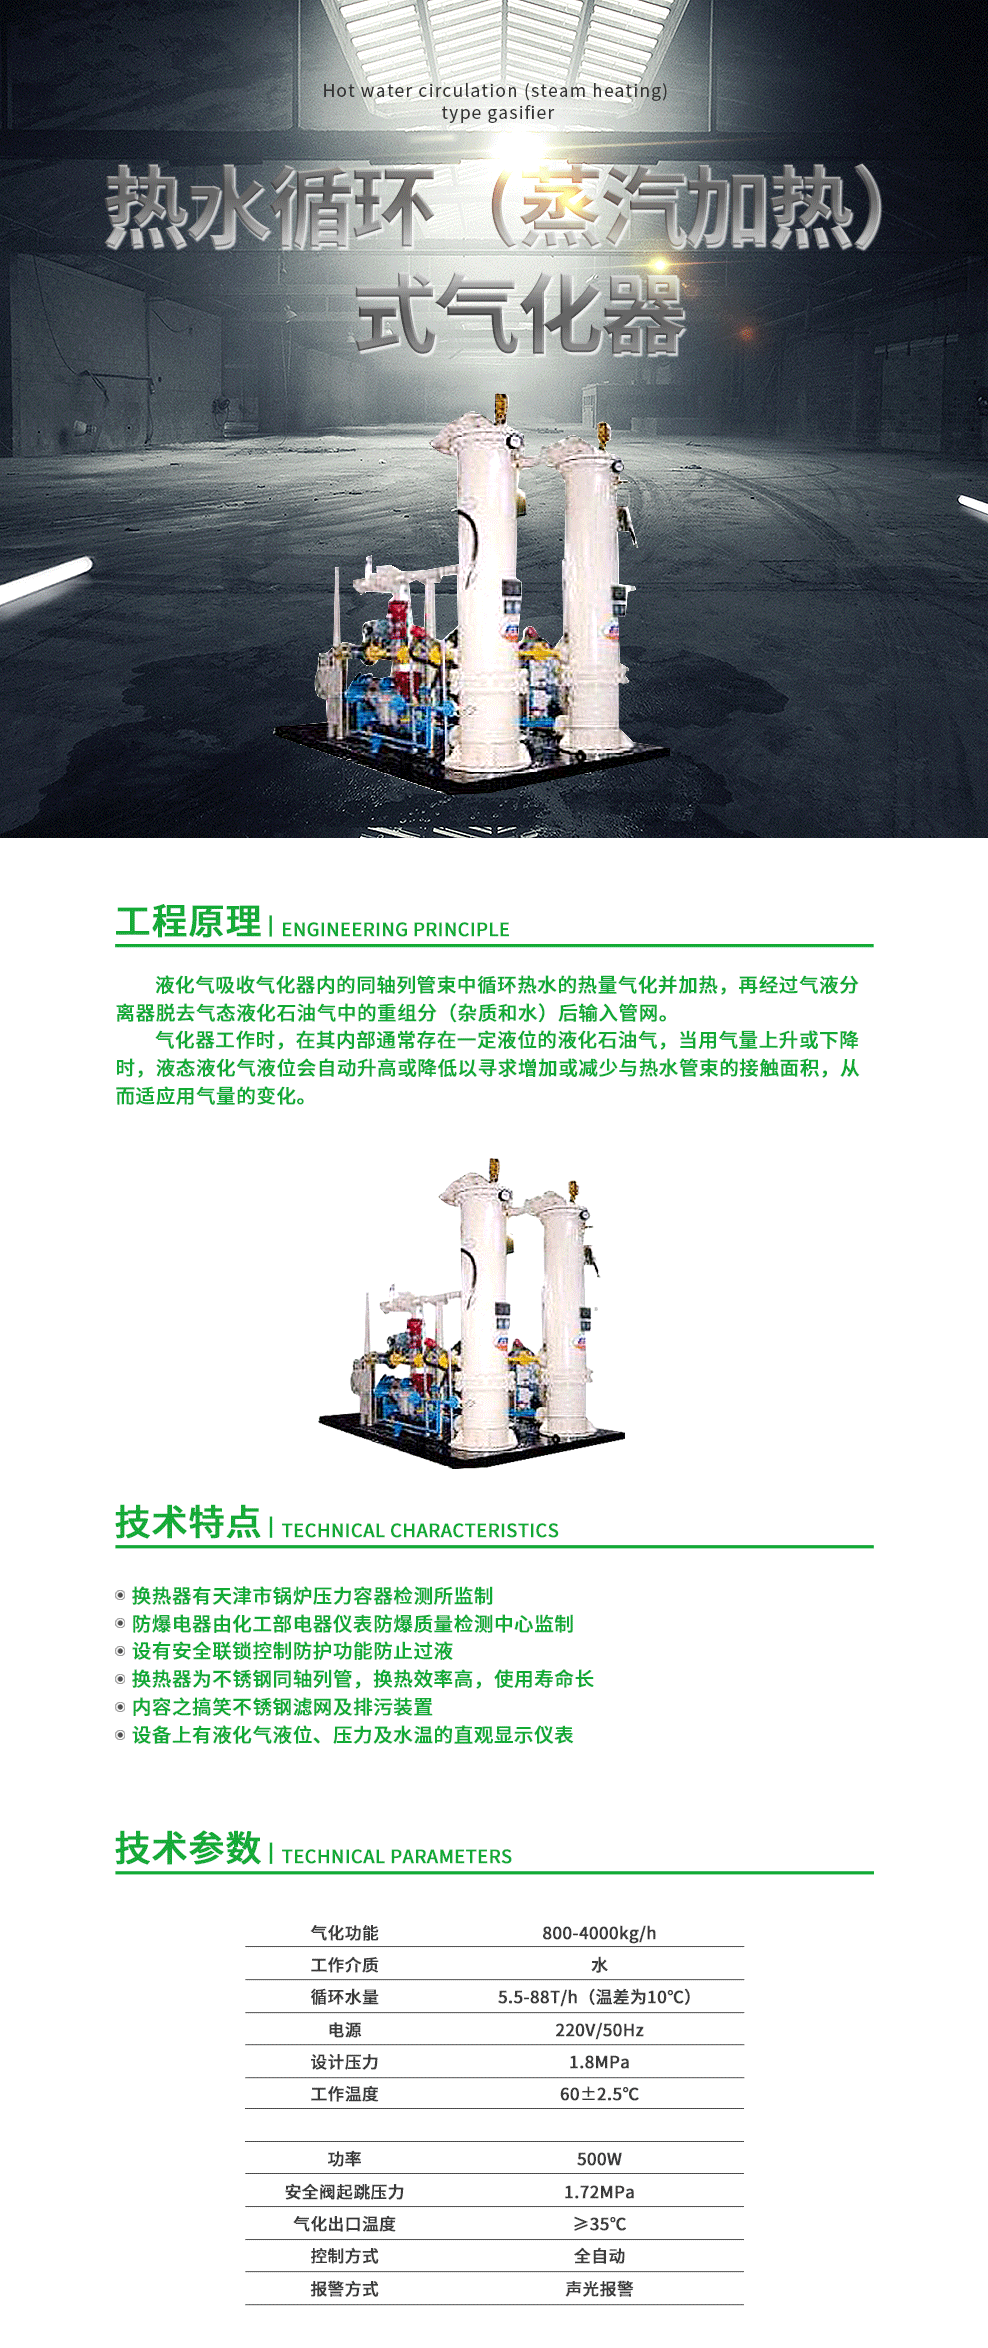 17-热水循环（蒸汽加热）式气化器.png